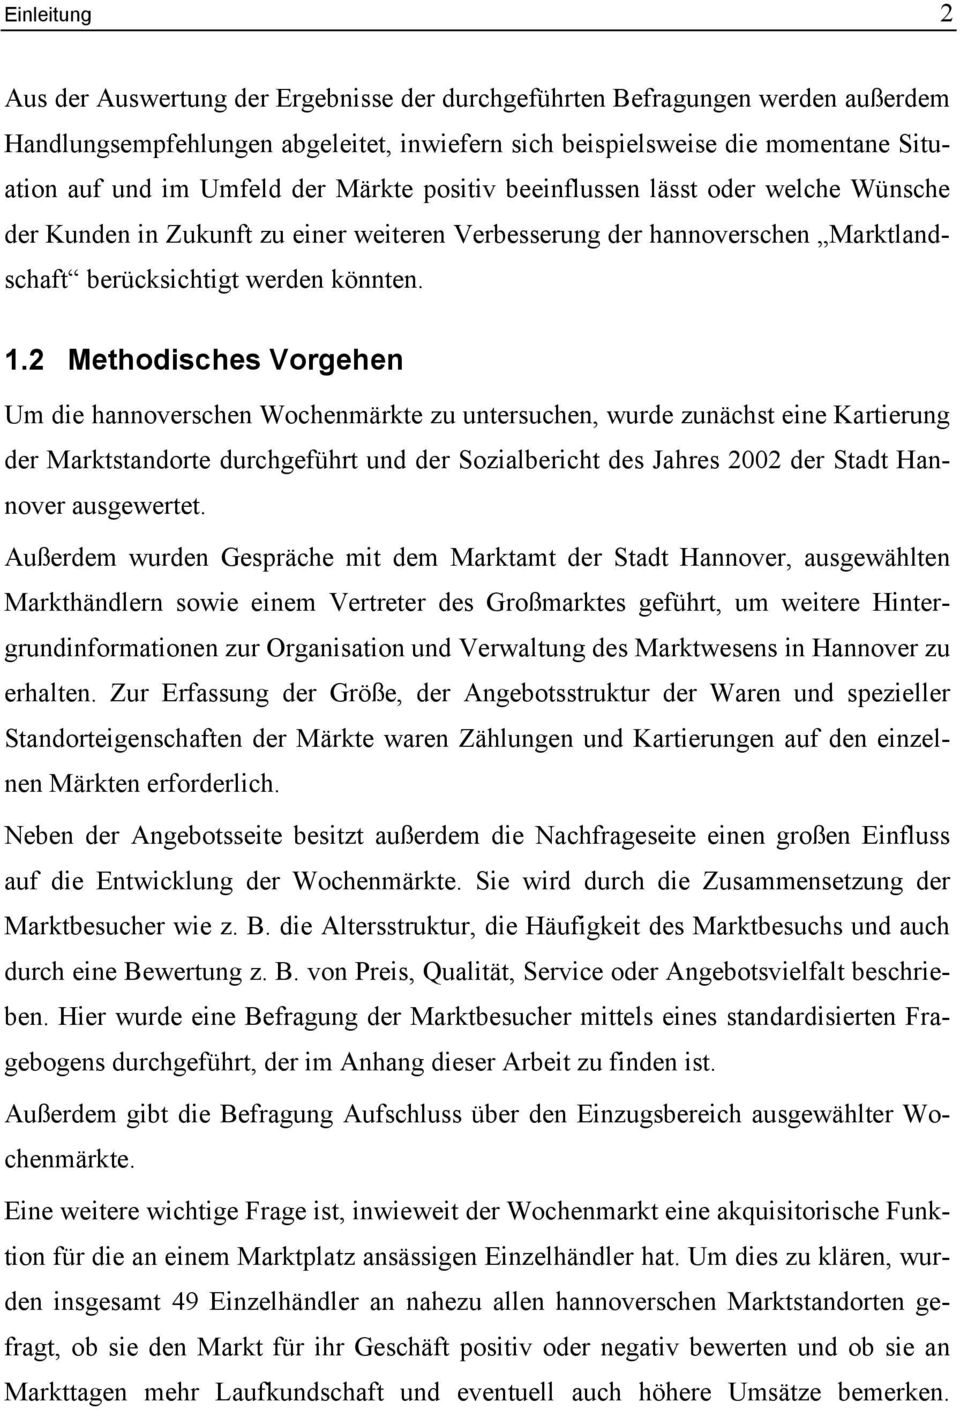 2 Methodisches Vorgehen Um die hannoverschen Wochenmärkte zu untersuchen, wurde zunächst eine Kartierung der Marktstandorte durchgeführt und der Sozialbericht des Jahres 2002 der Stadt Hannover